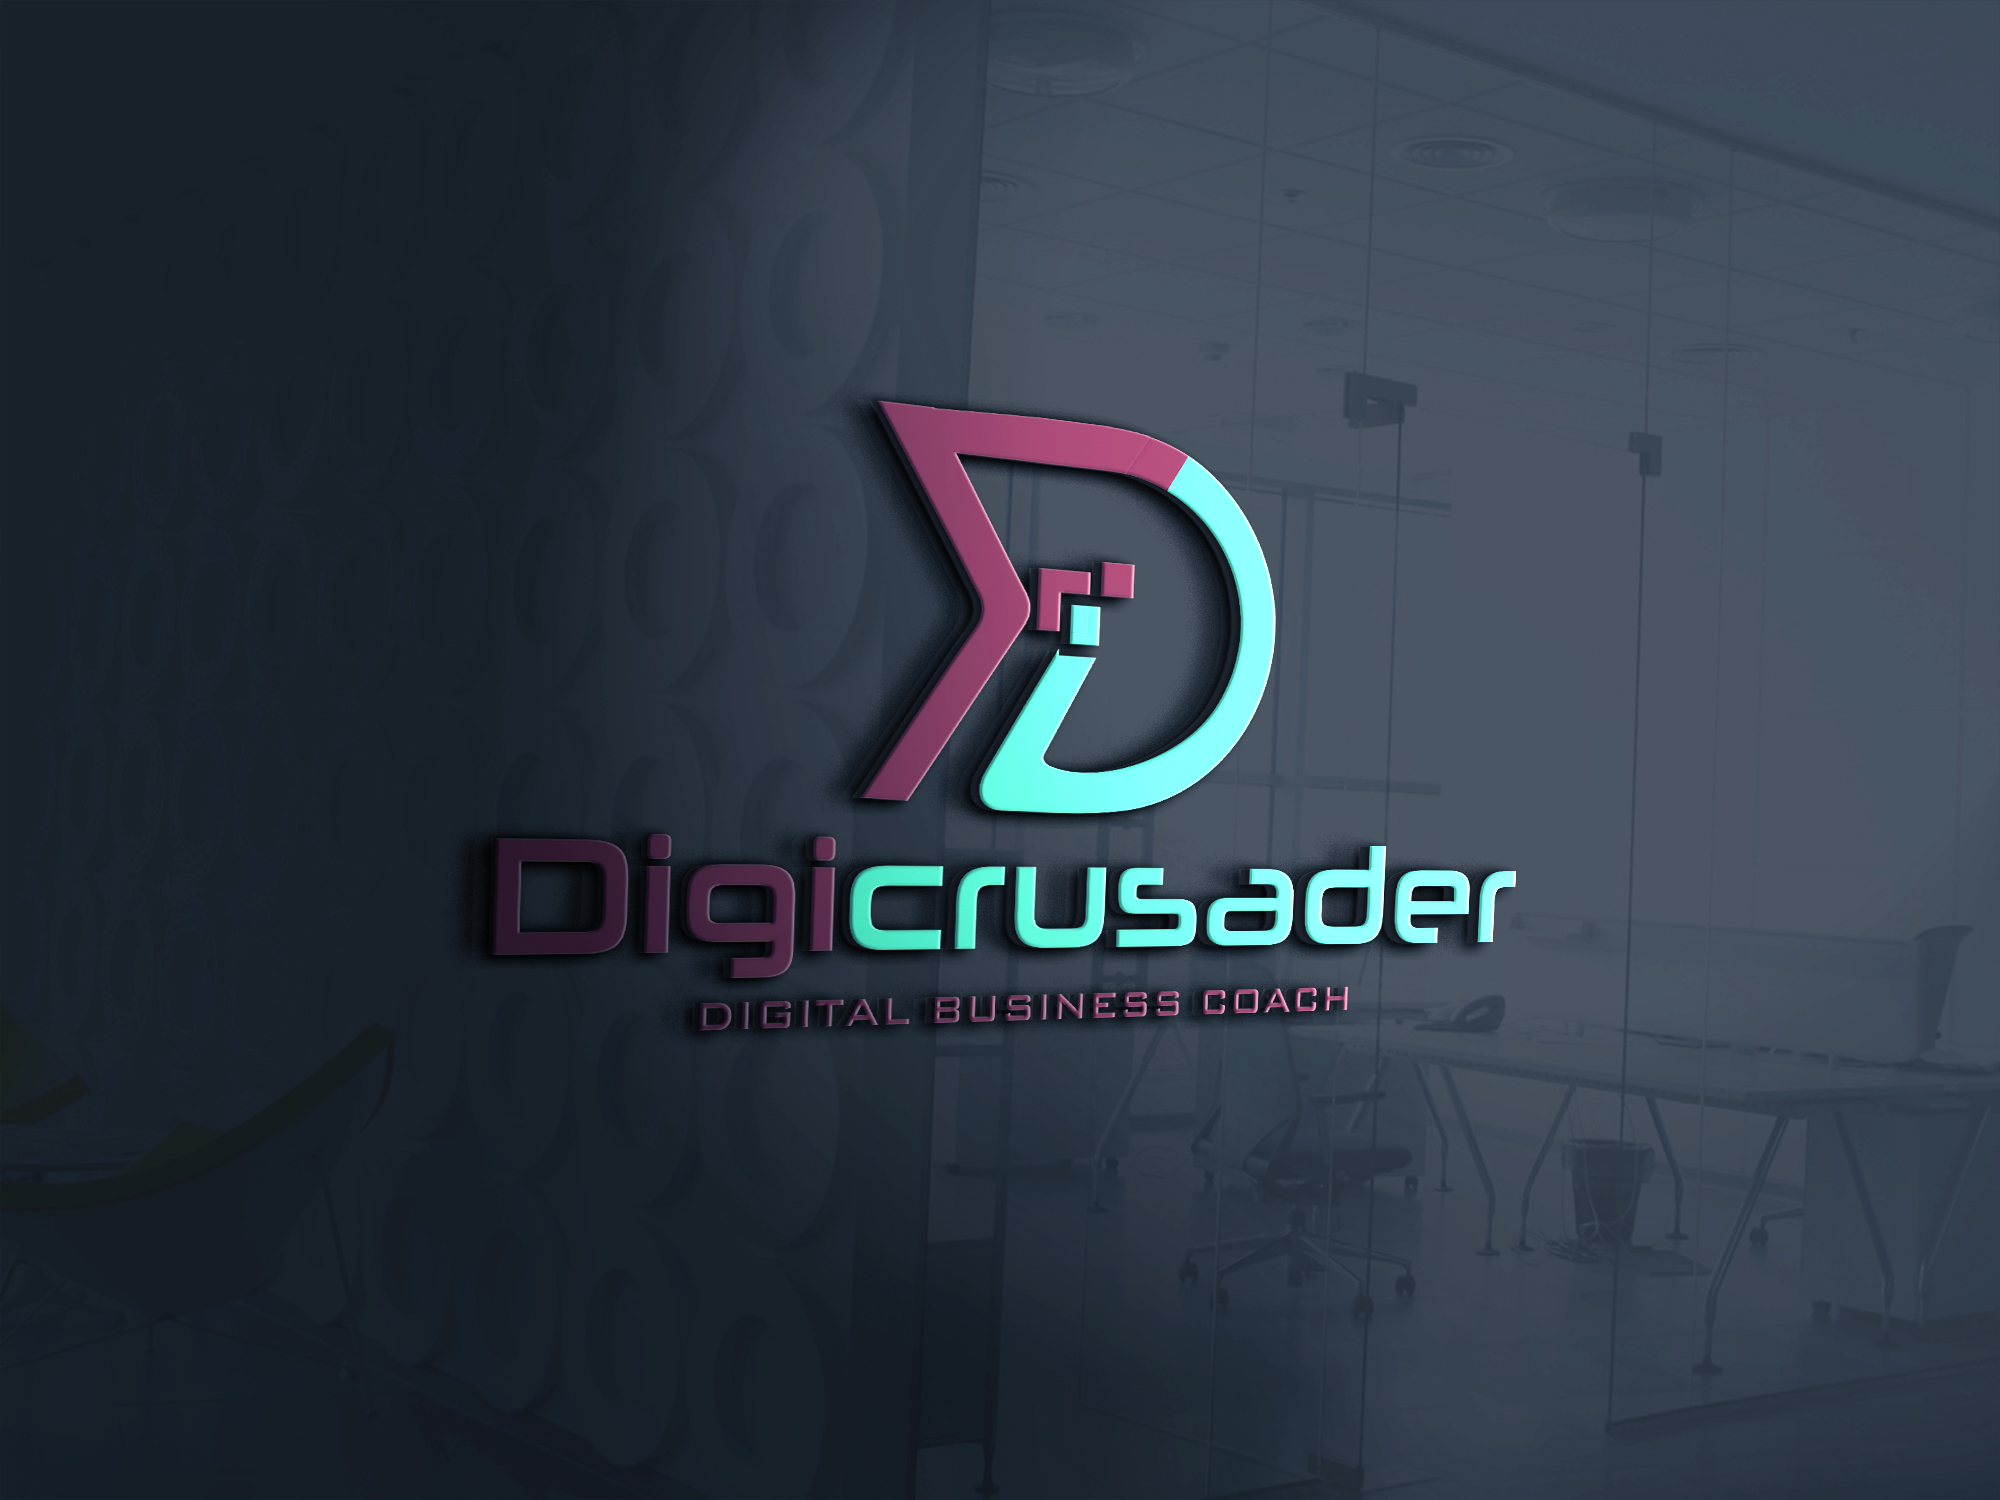 (c) Digicrusader.com